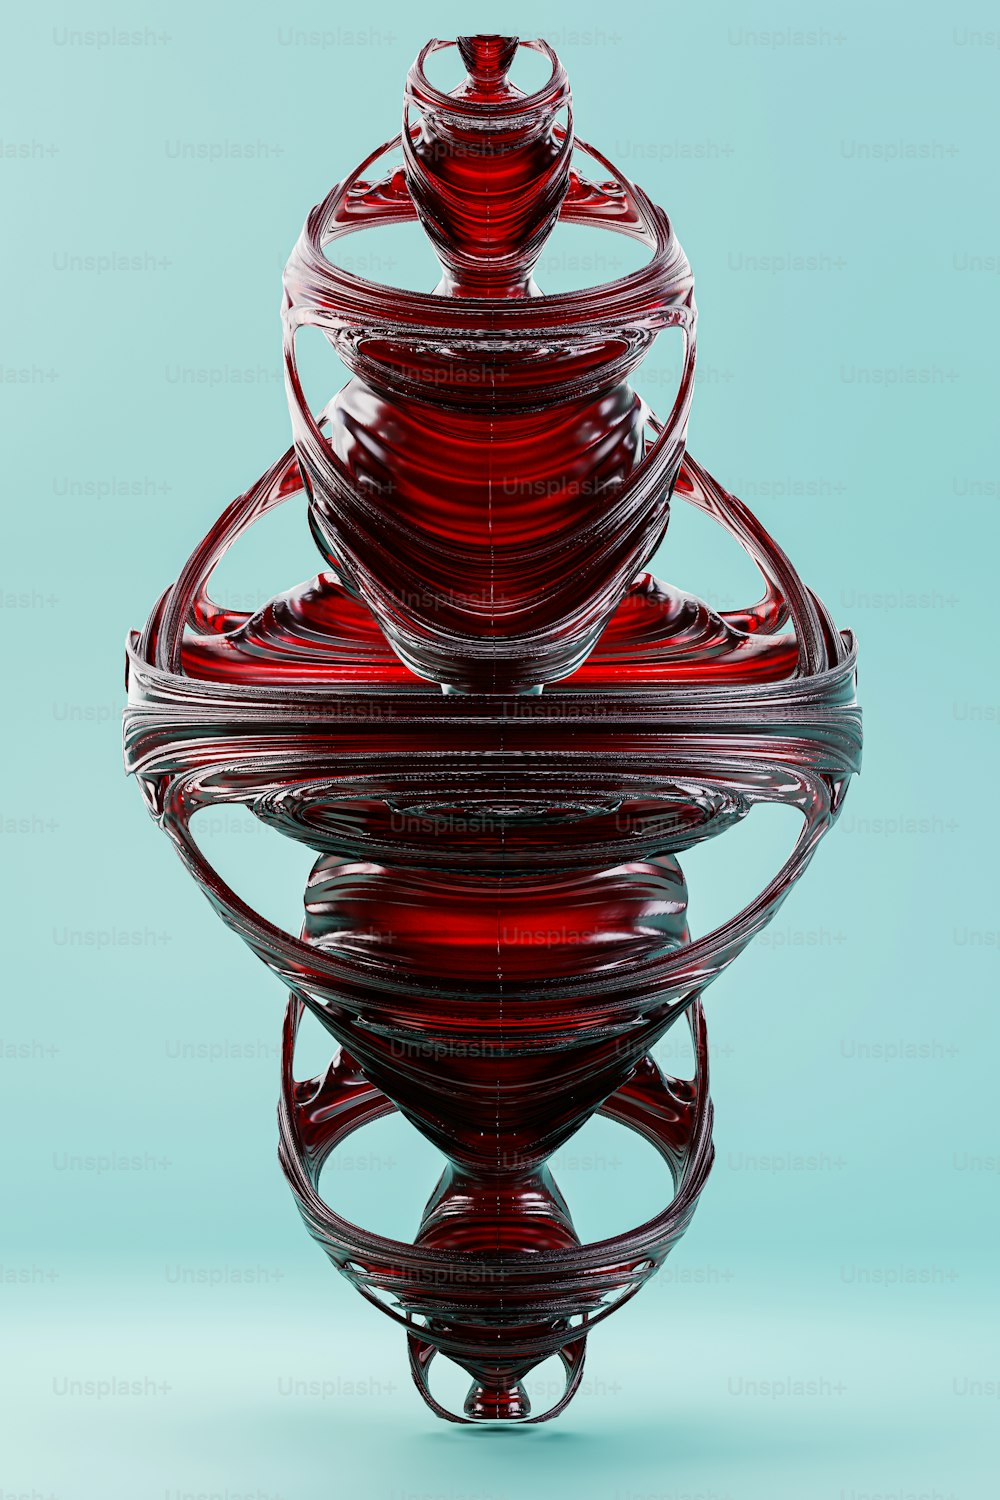 Un oggetto di vetro rosso seduto sopra una superficie blu